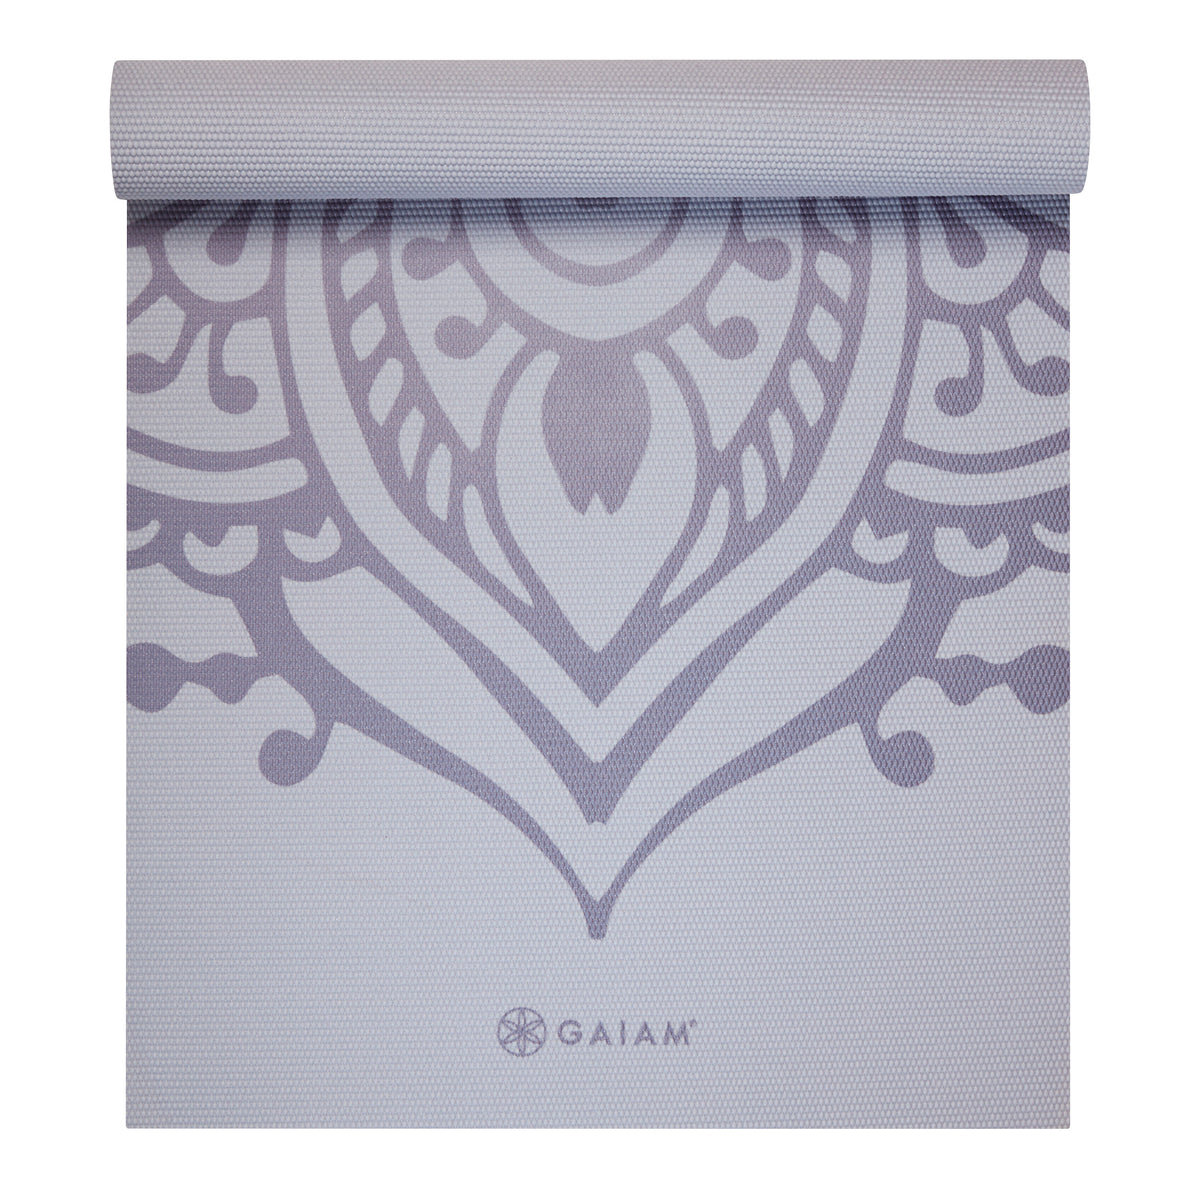 Gaiam Premium Printed Yoga Mat